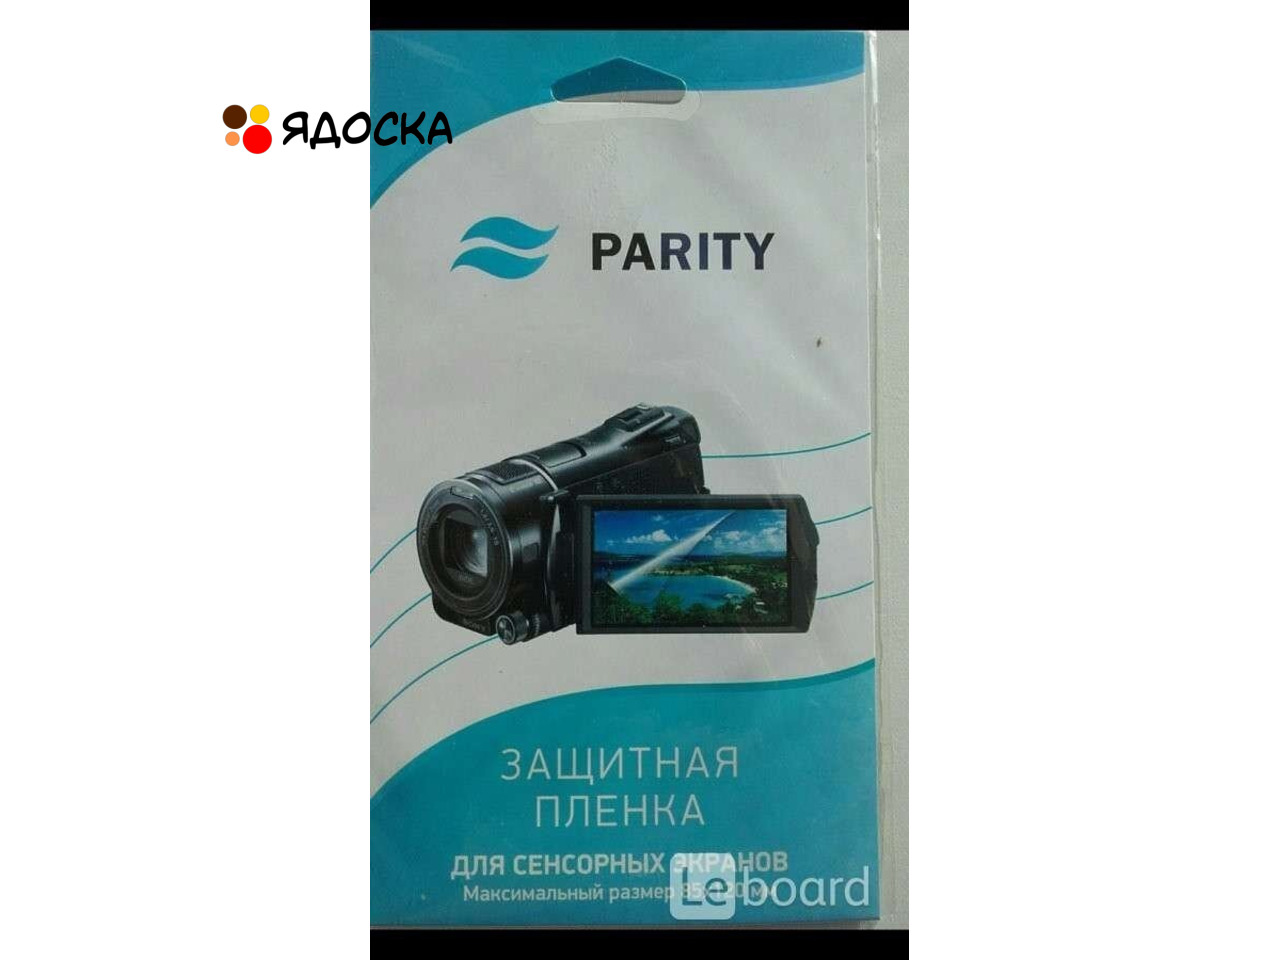 Защитная пленка видеокамера parity 85/120 мм новая аксессуар техника электроника телефон смартфон - 1